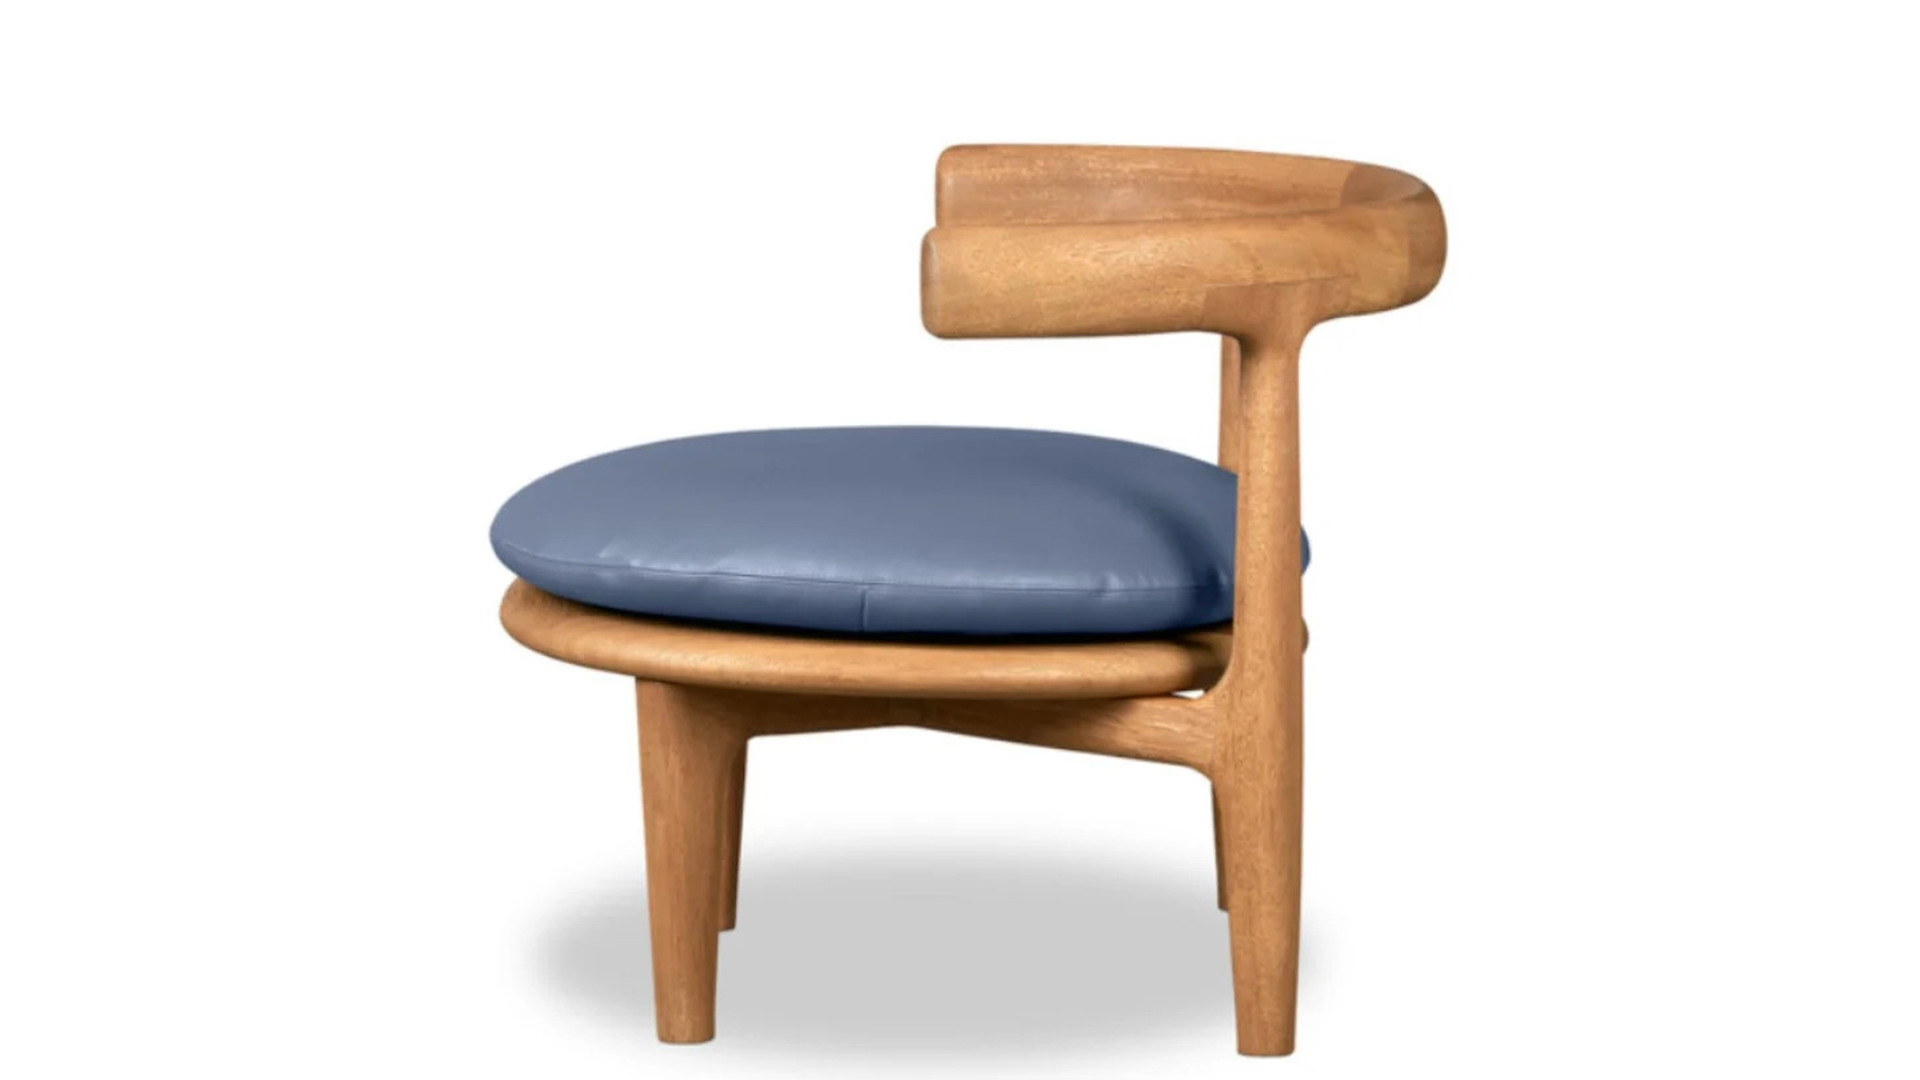 HORA Barneveld Baxter Himba fauteuil armstoel arm stoel easy chair 6.jpg